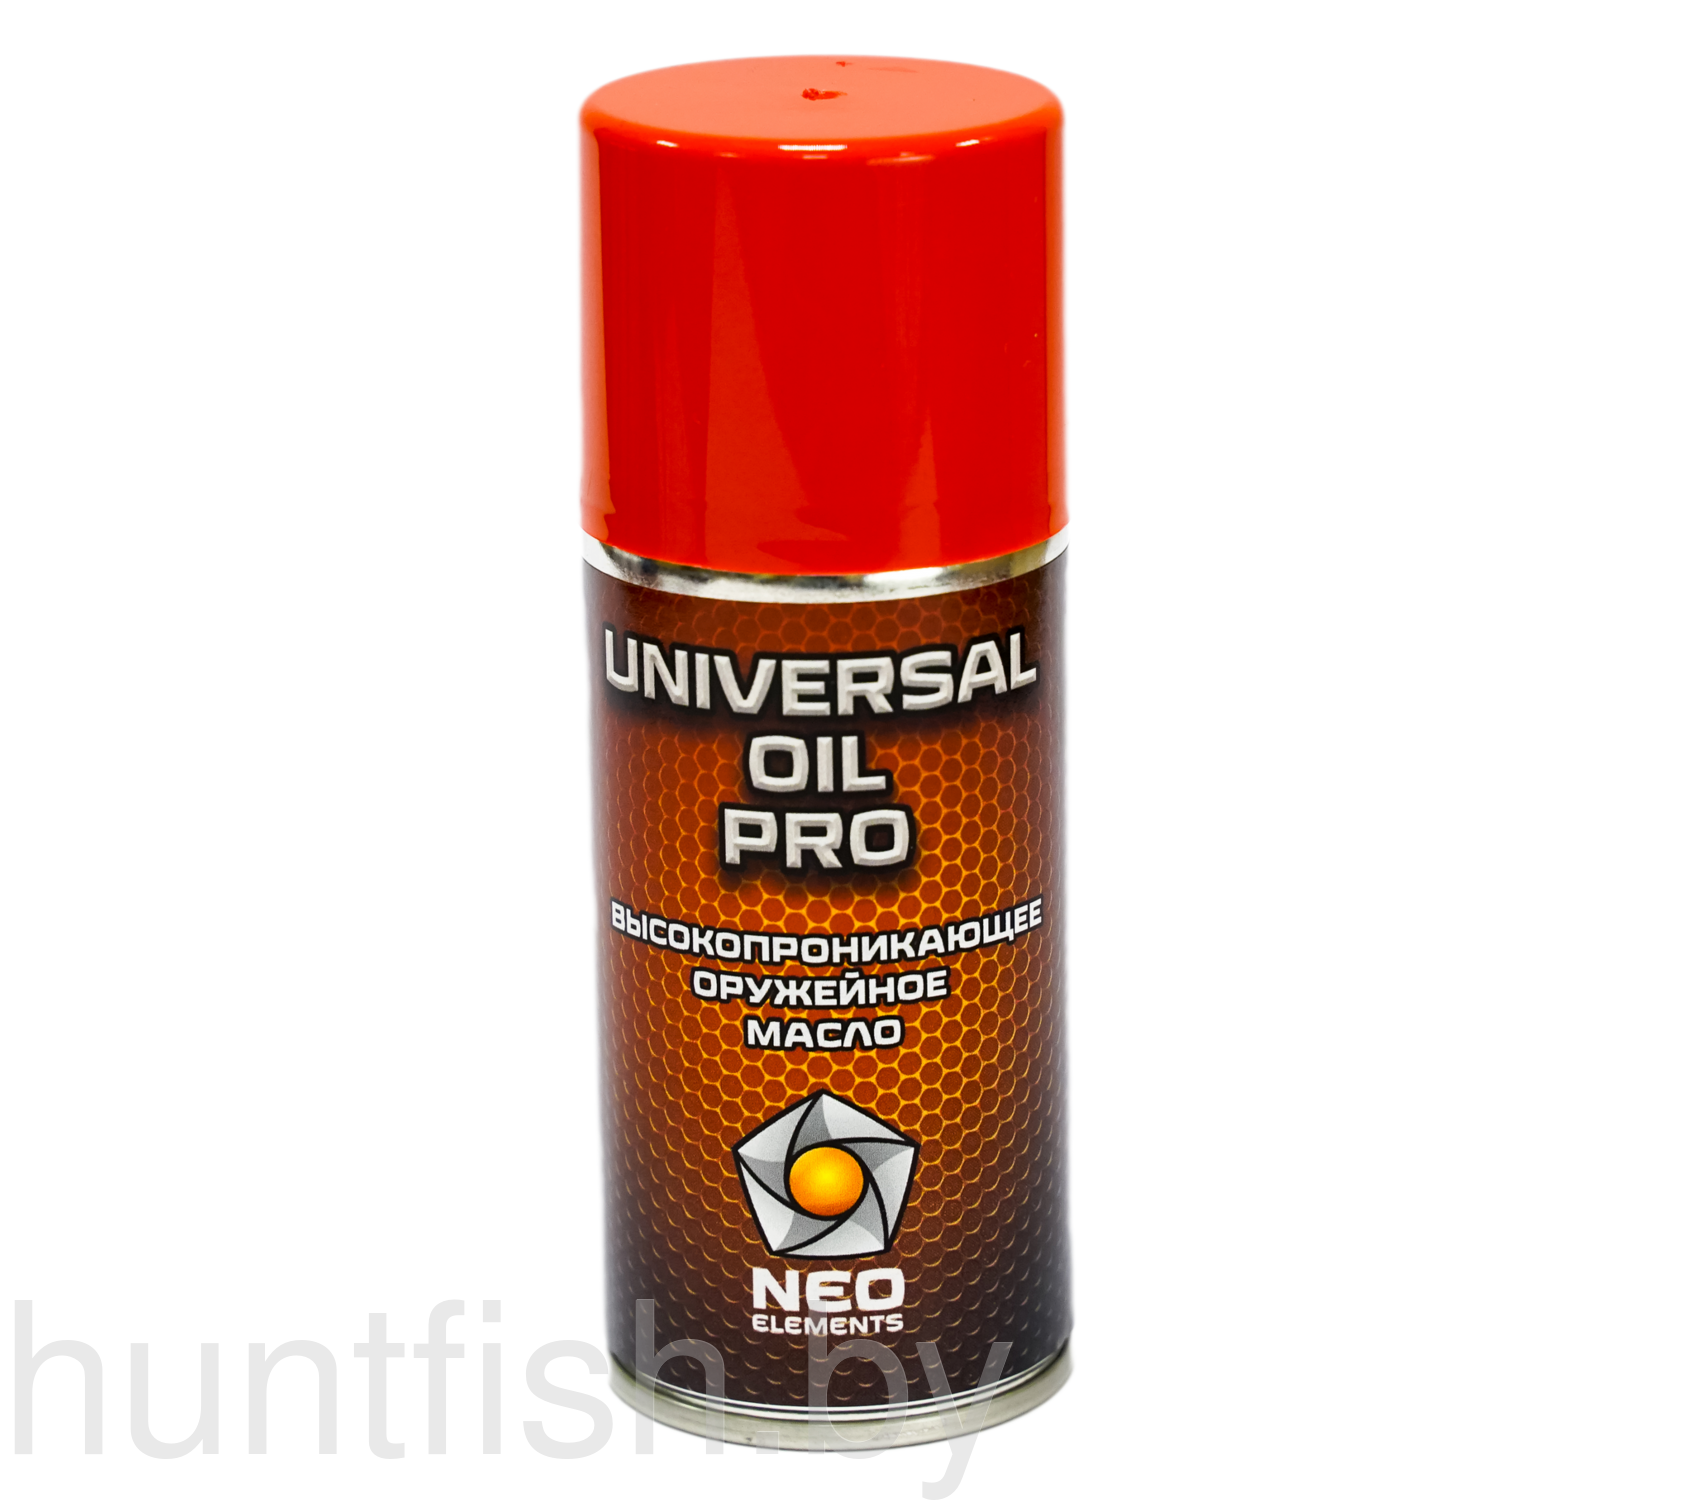 Высокопроникающее масло Universal Oil Pro 210 мл, Новая формула